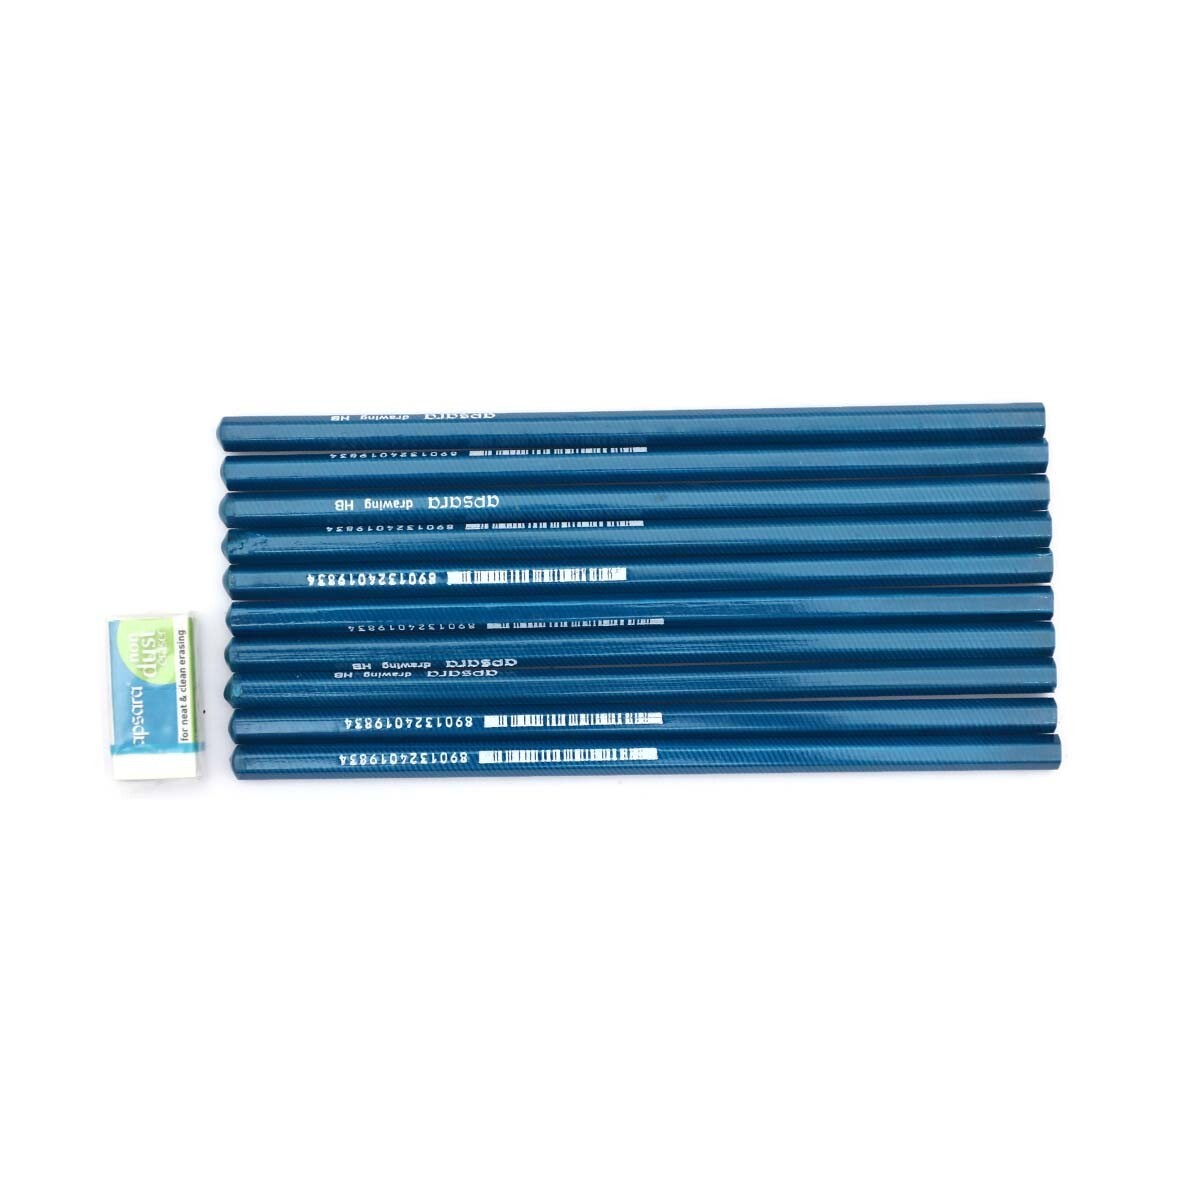 Apsara Drawing Pencil HB 10s - 101200004